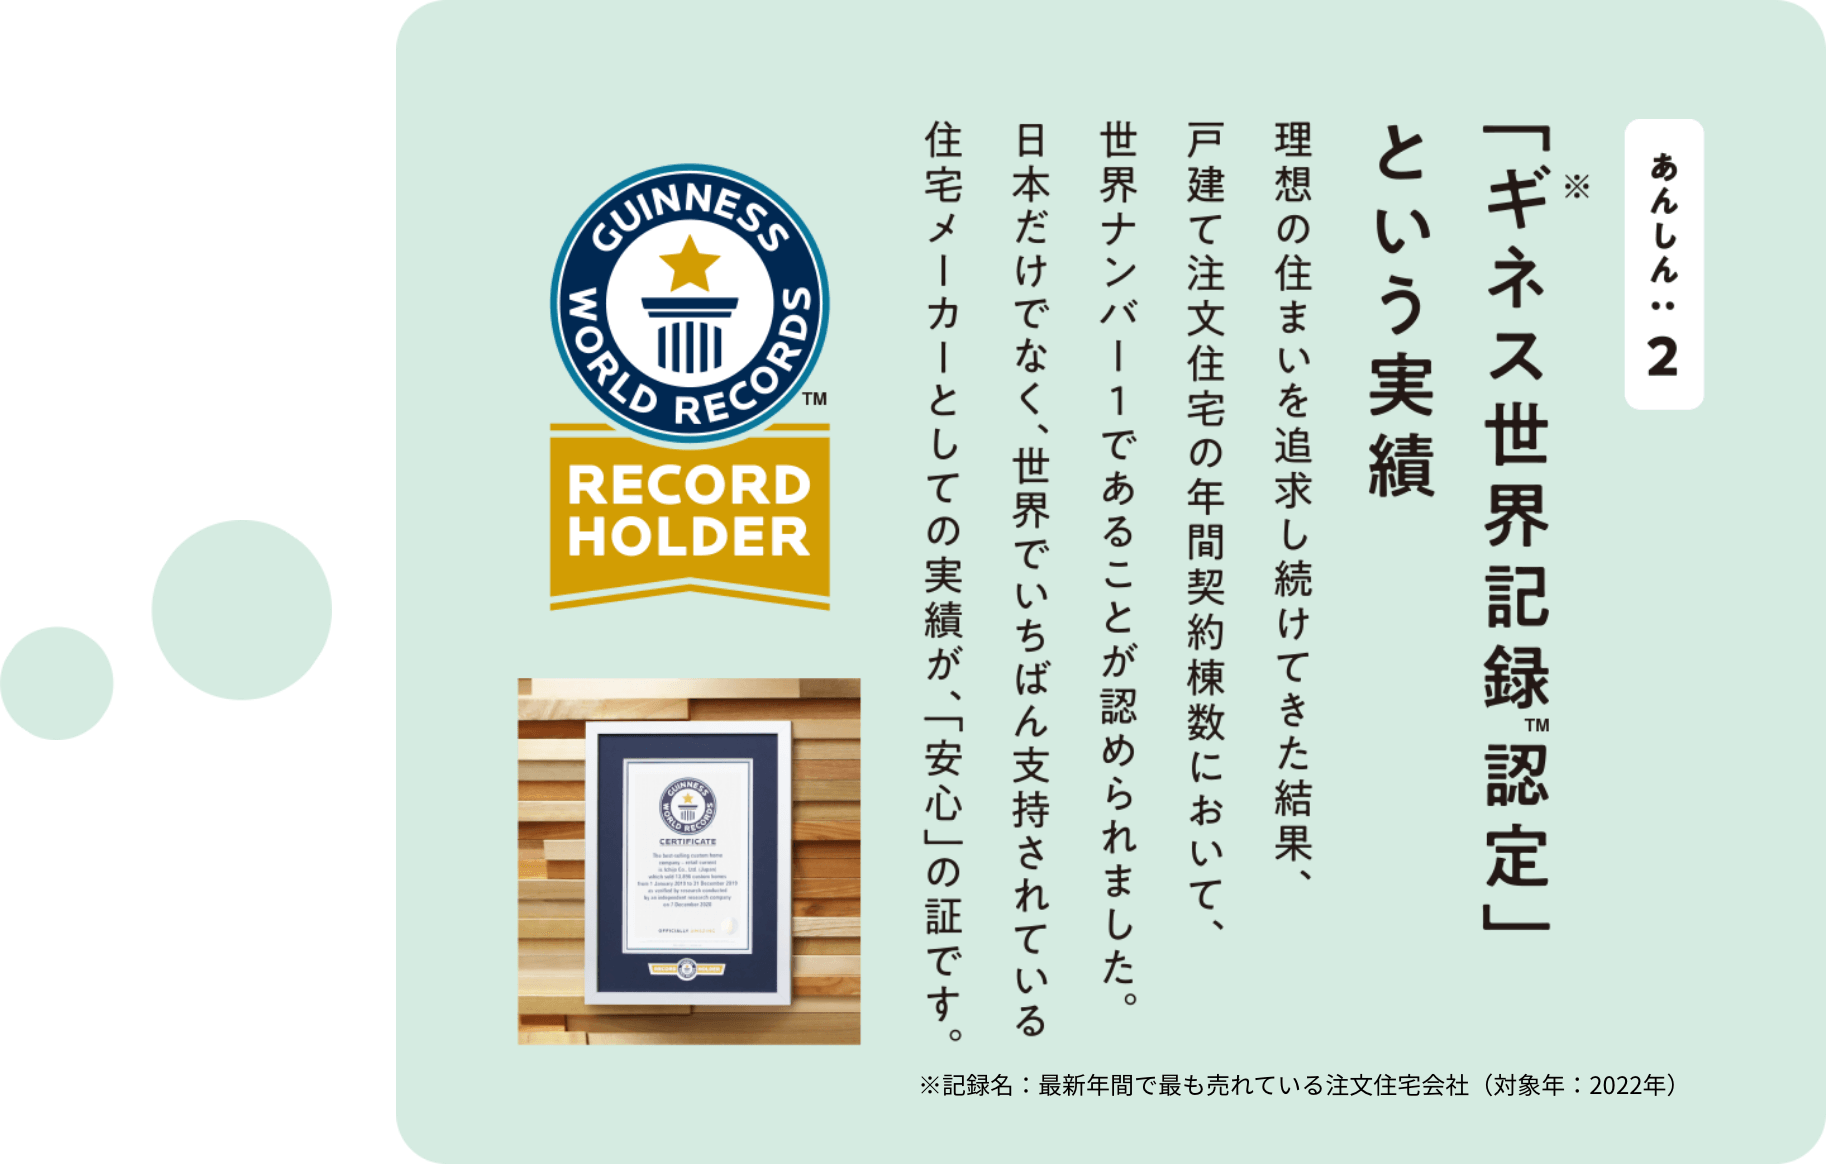 あんしん2「ギネス世界記録認定」とく実績 理想の住まいを追求し続けてきた結果、戸建て注文住宅の年間契約棟数において、世界ナンバー1であることが認められました。日本だけでなく、世界でいちばん支持されている住宅メーカーとしての実績が、「安心」の証です。